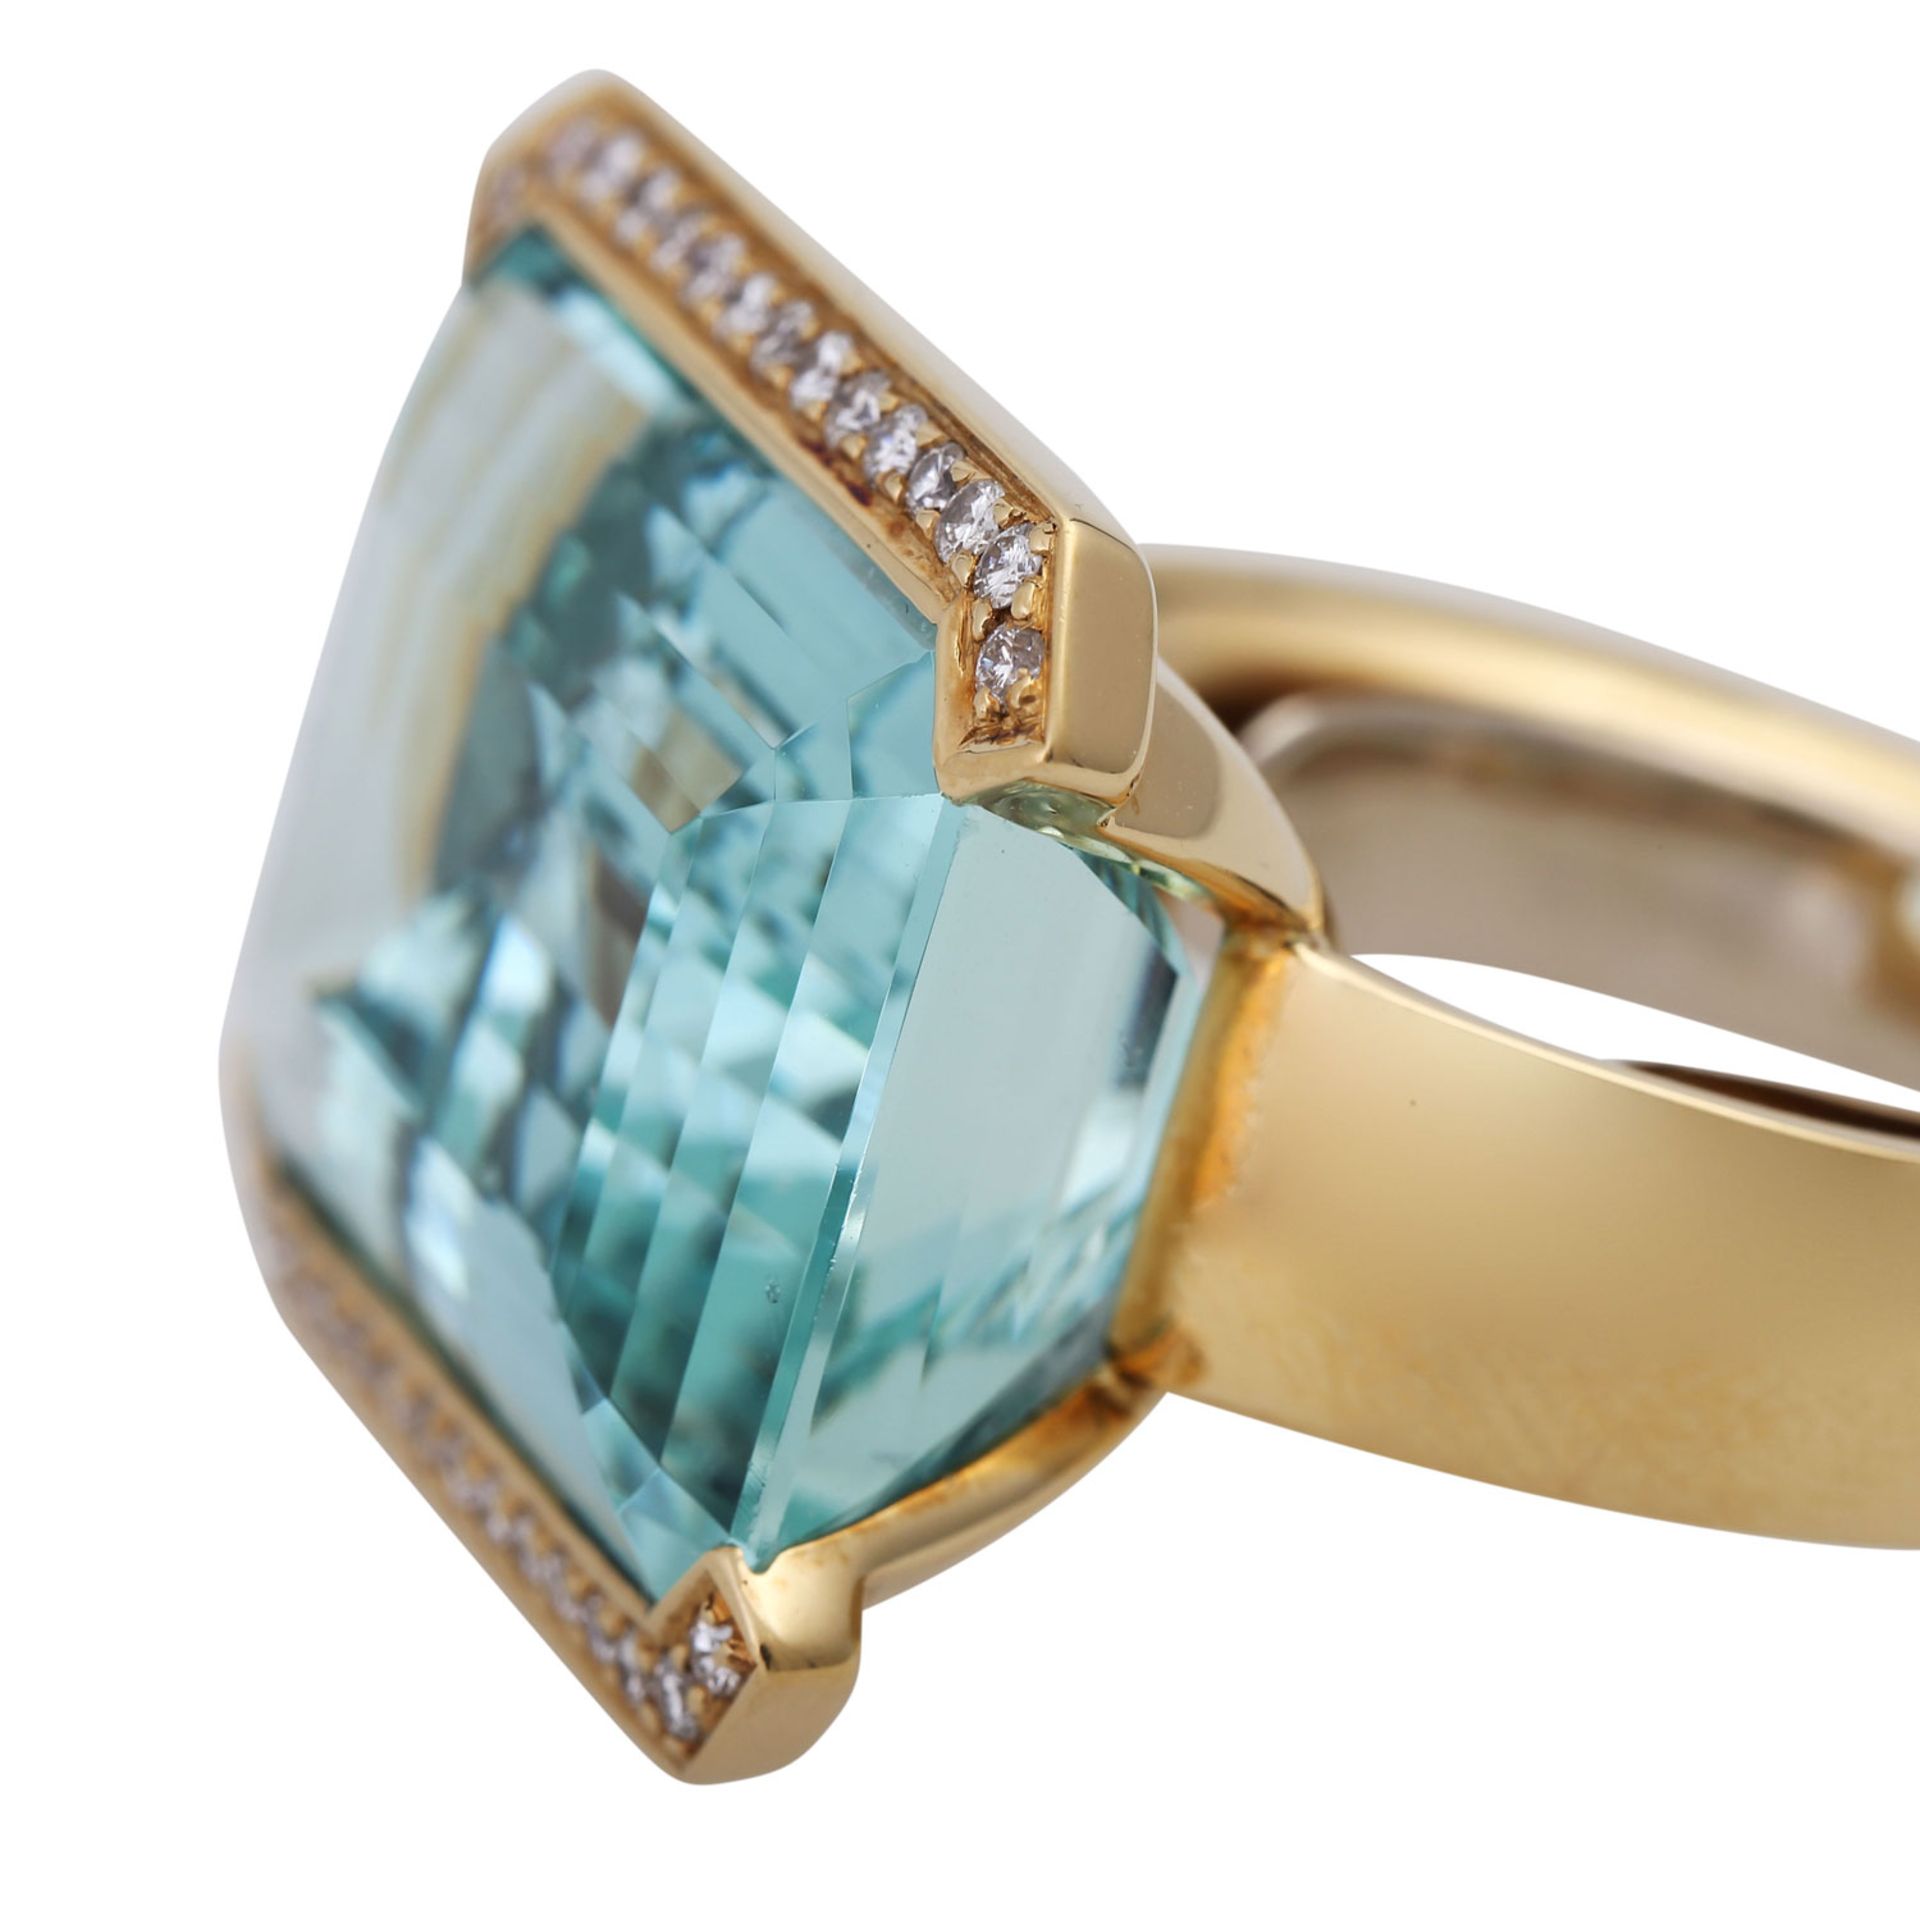 Ring mit Aquamarinca. 20x15 mm sowie 30 Brill. zus. ca. 0,3 ct, gute Farbe u. Reinheit, GG 18K. - Image 5 of 5